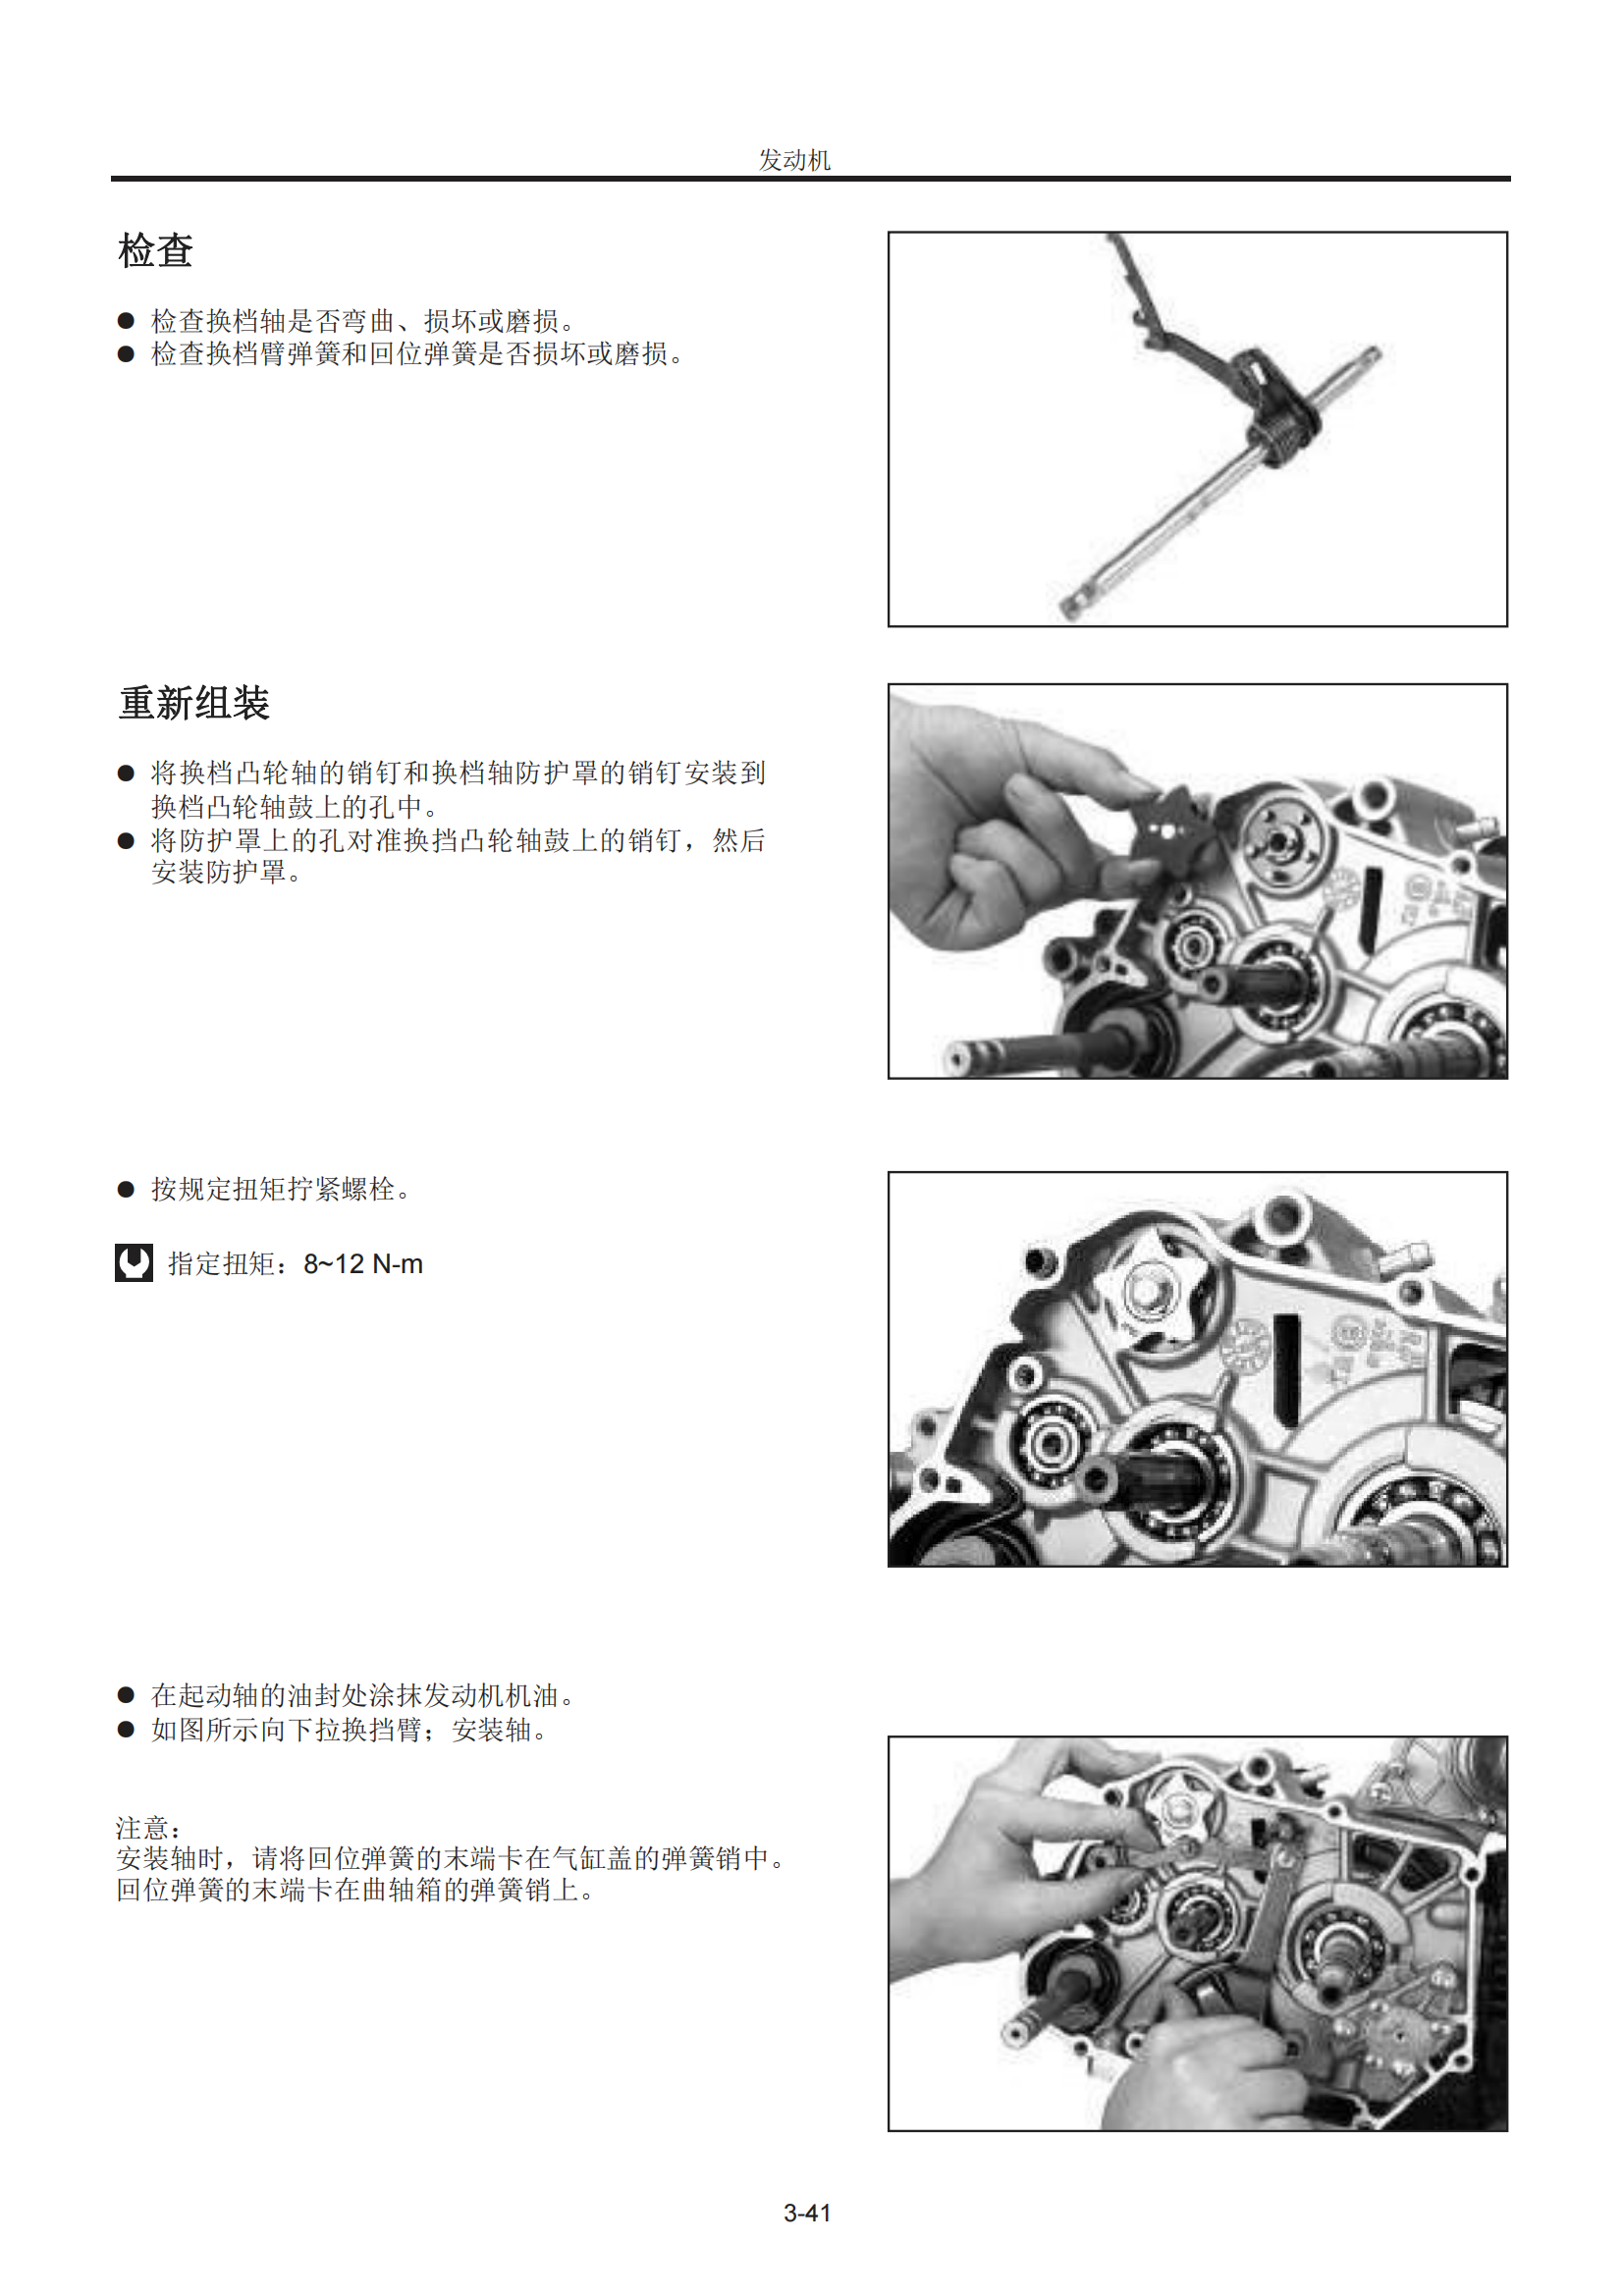 简体中文2008年豪爵HJ110-2 HJ110-2A维修手册插图4